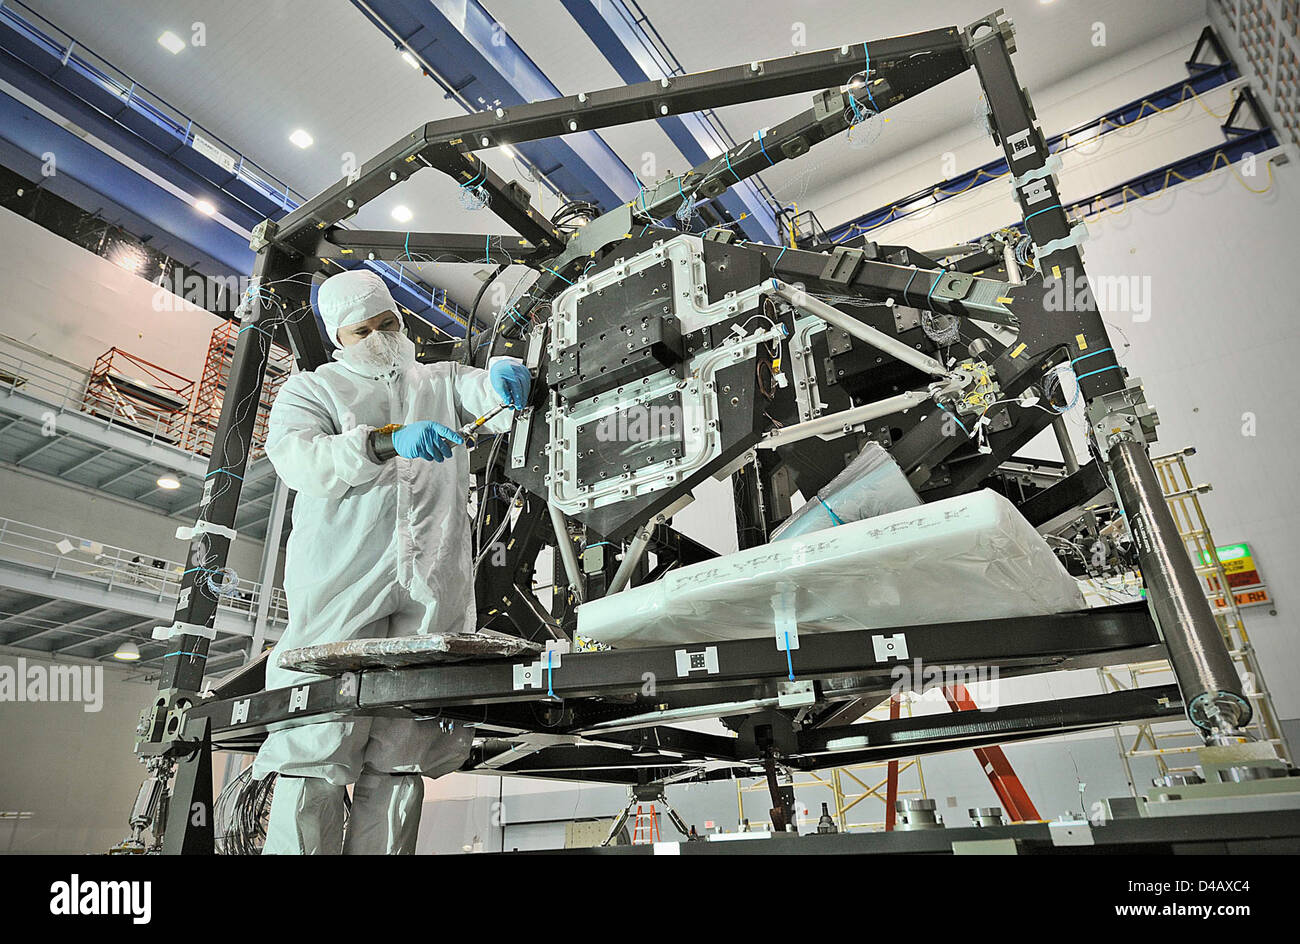 La NASA Telescopio Webb Foto Stock